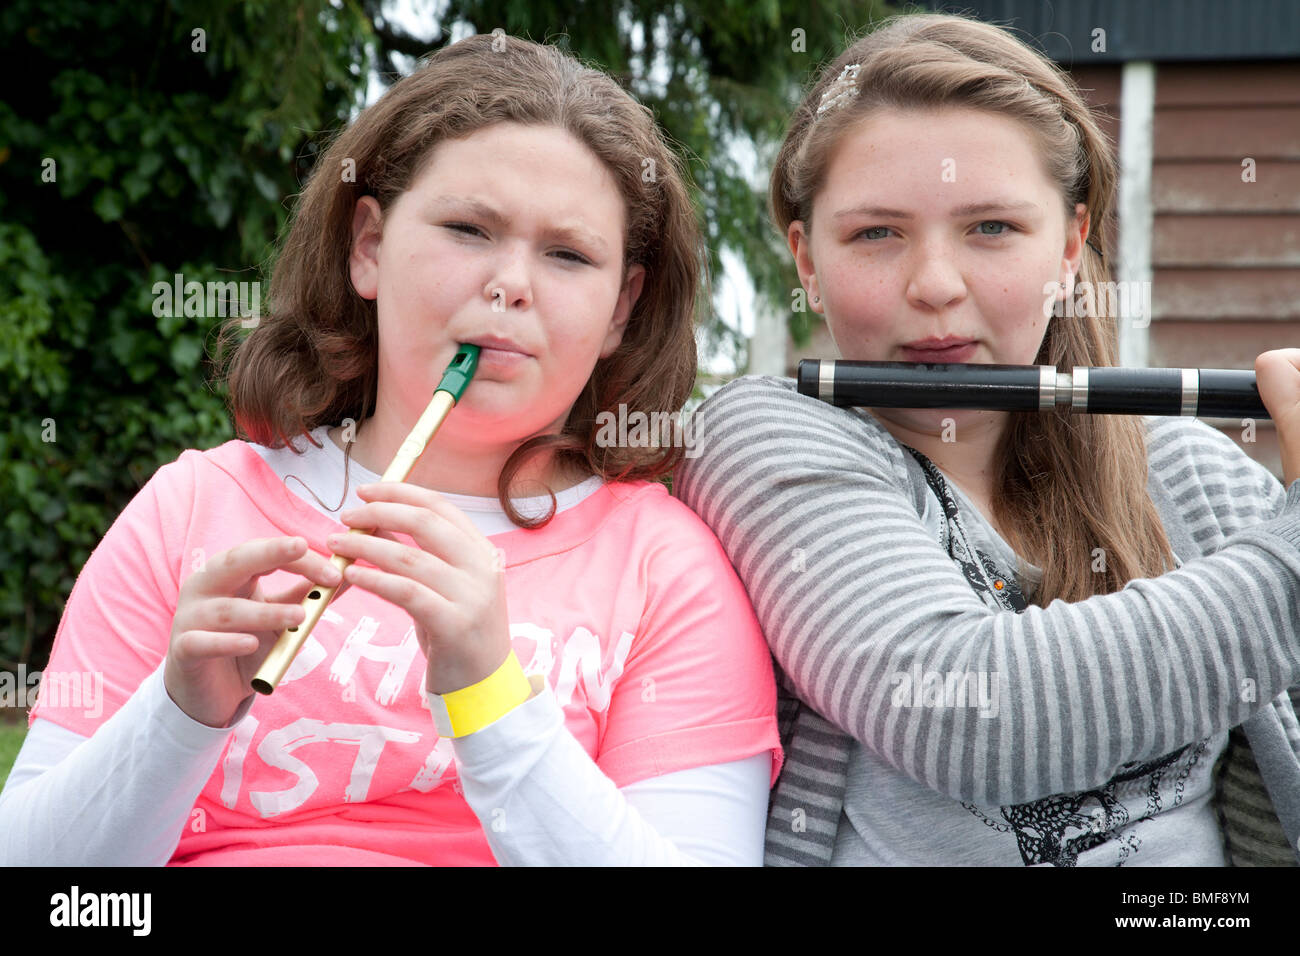 Competidores en el condado de Limerick Fleadh Ceol concurso de música irlandesa, el 5 de junio de 2010 Hospital, el condado de Limerick, Irlanda Foto de stock